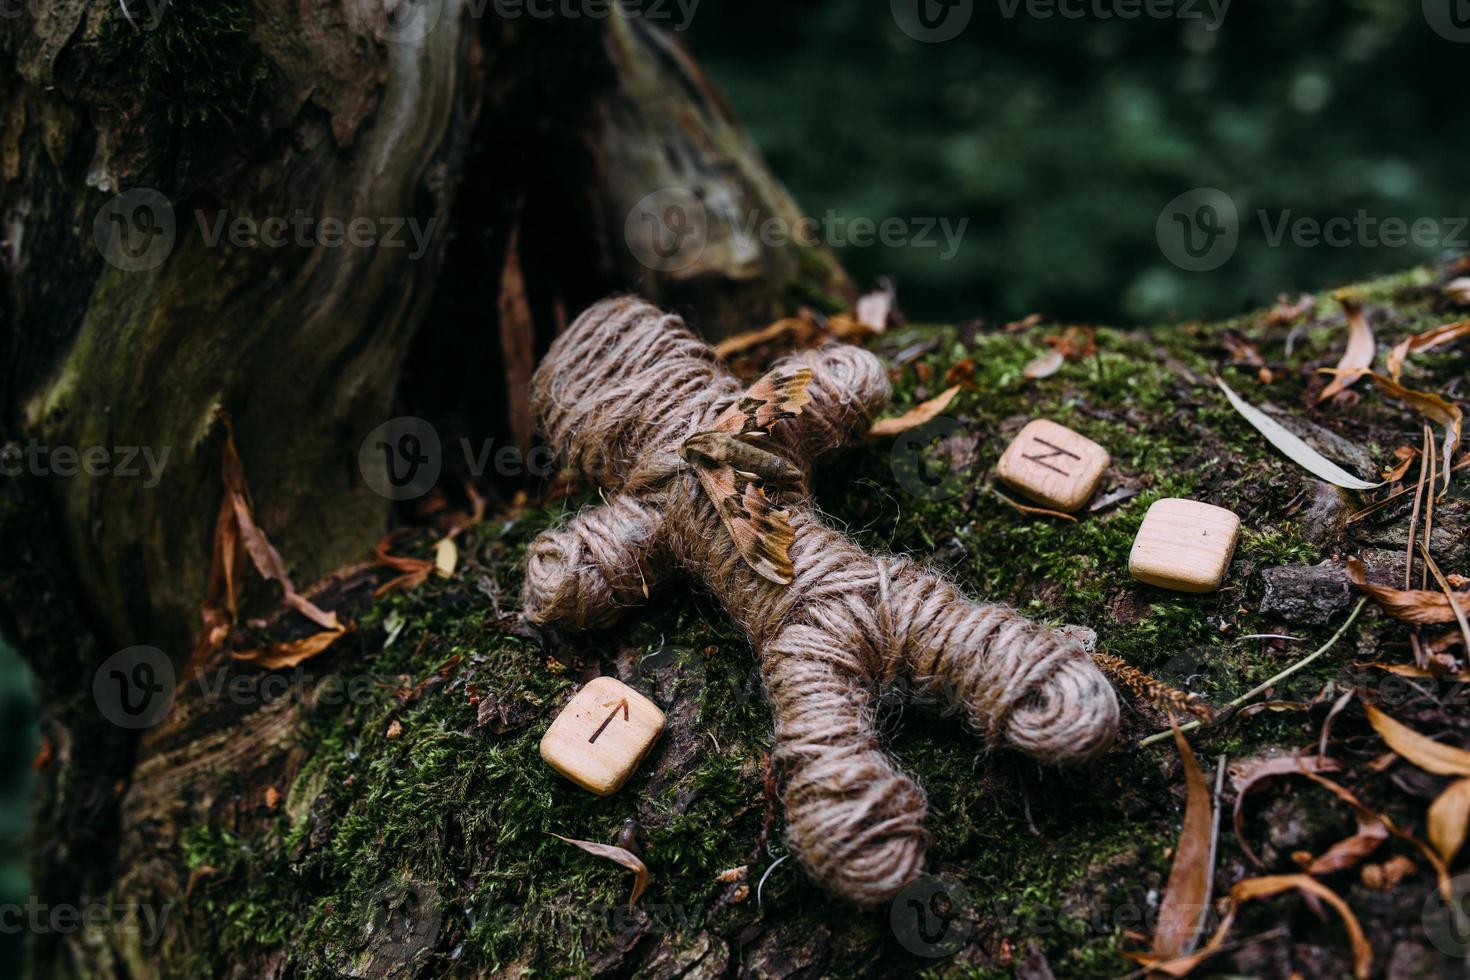 una muñeca vudú tejida de hilos, polillas y runas en ritual en un bosque misterioso. foto